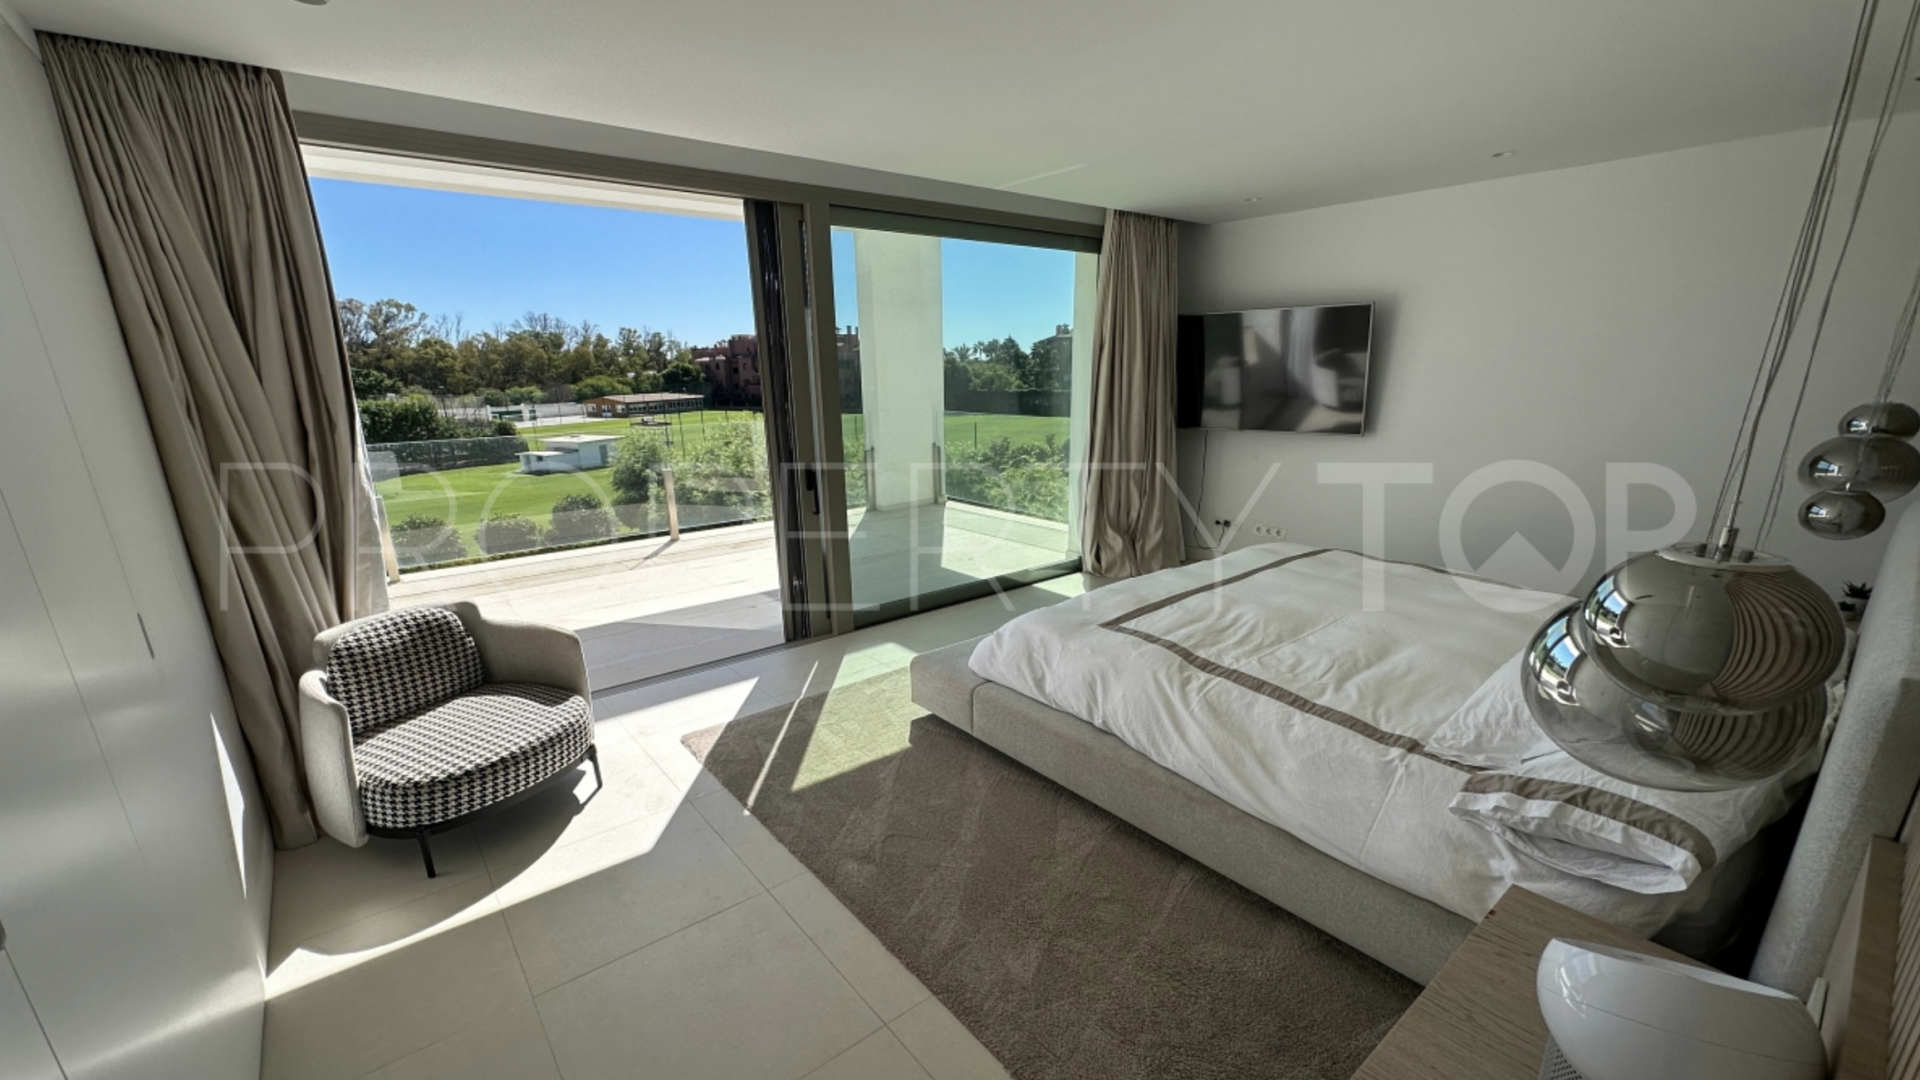 For sale villa with 4 bedrooms in Loma de Casasola